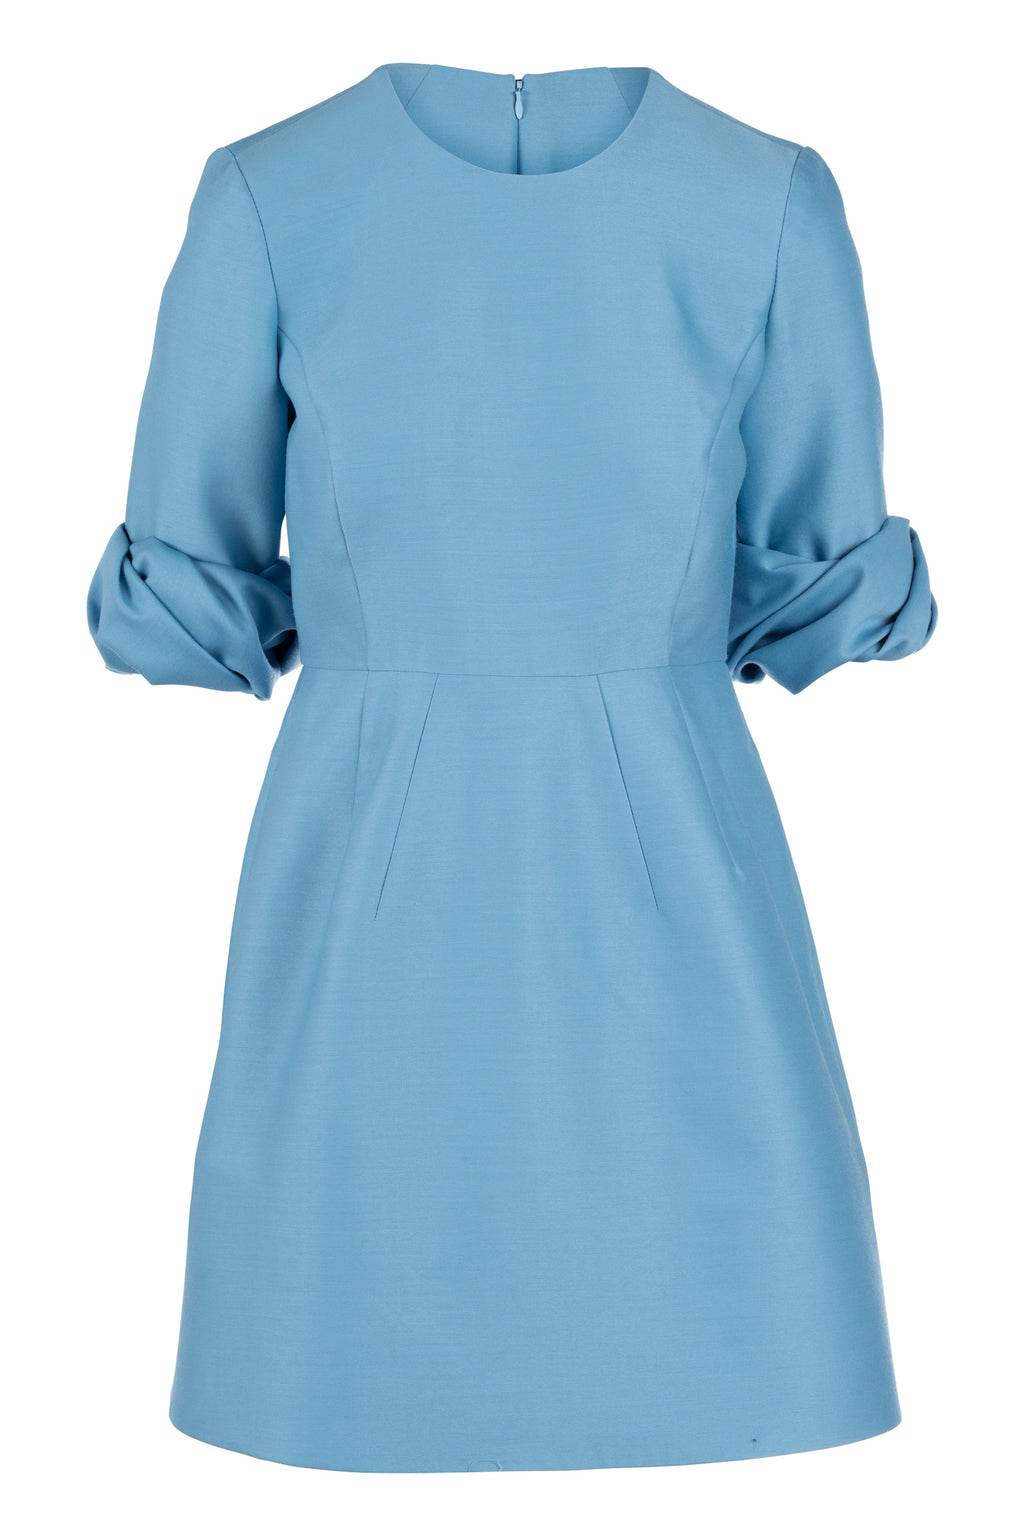 Rosette Dress - Cornflower Blue